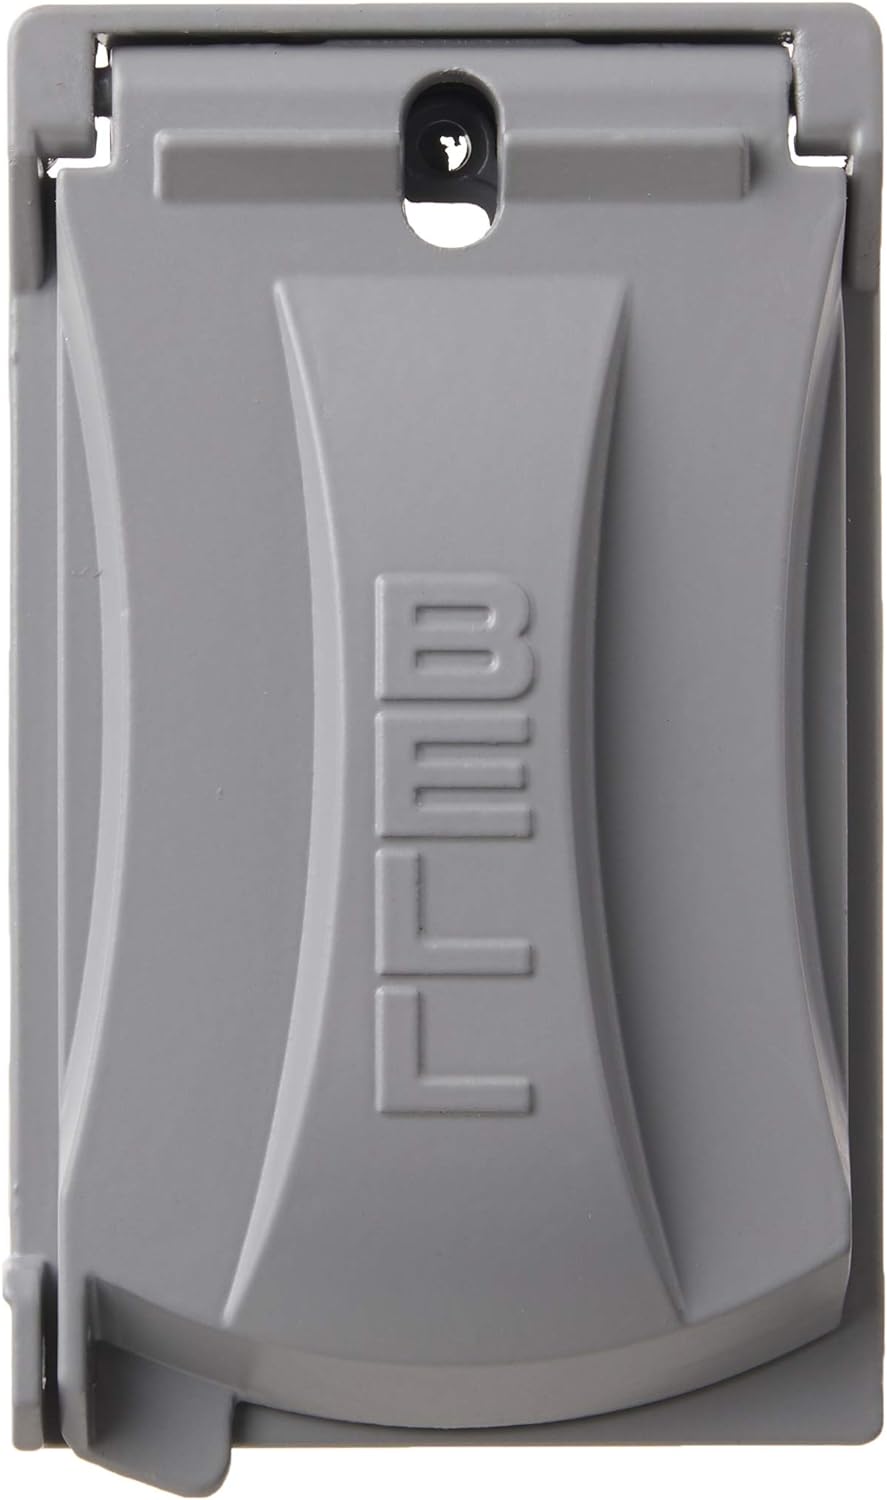 Hubbell Bell Funda con tapa universal resistente a la intemperie de una sola unidad (gris)